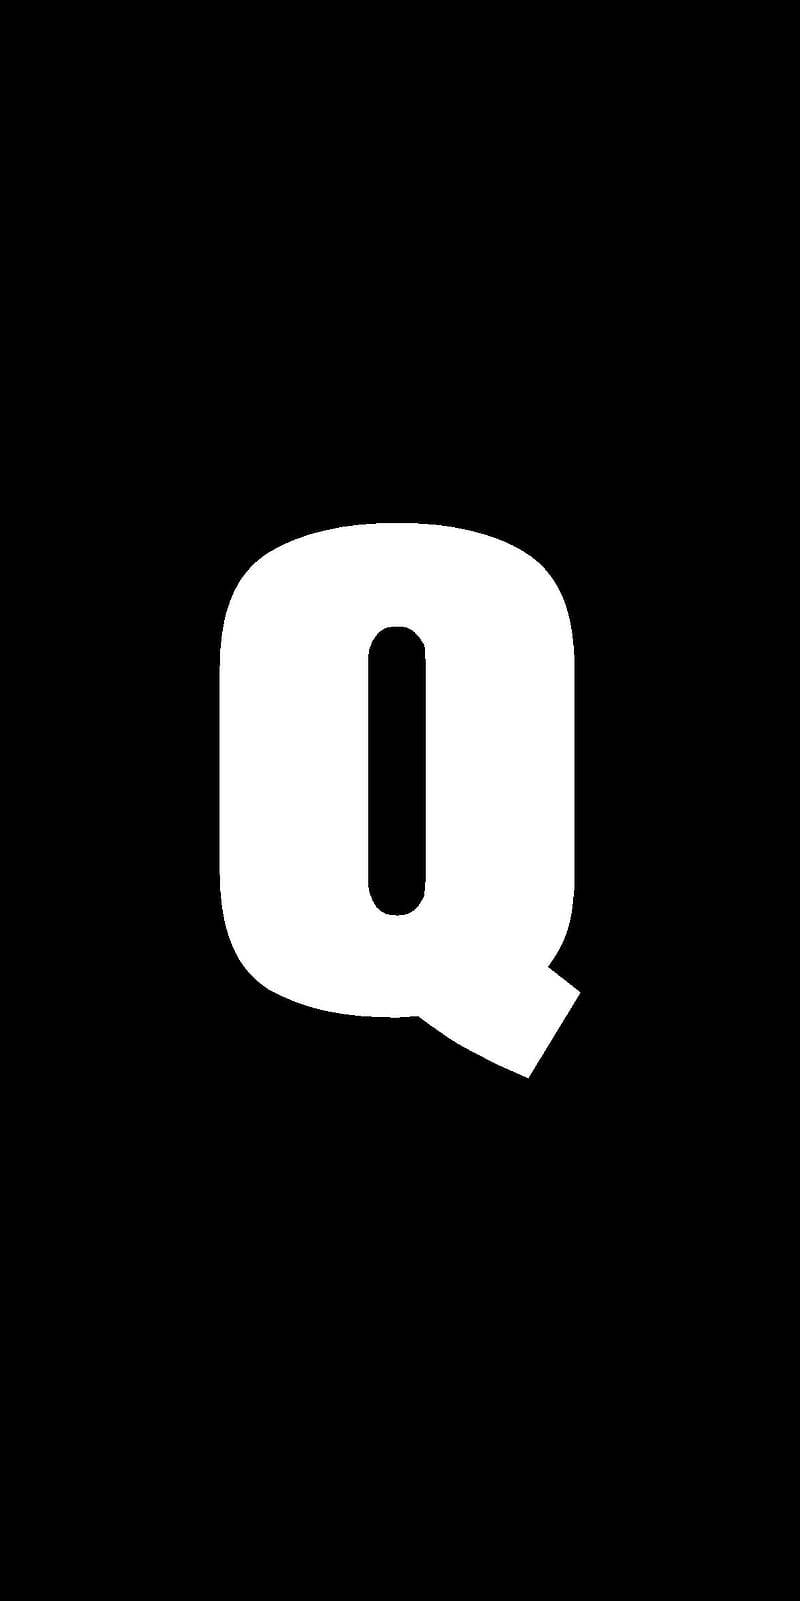 White Letter Q Name Black